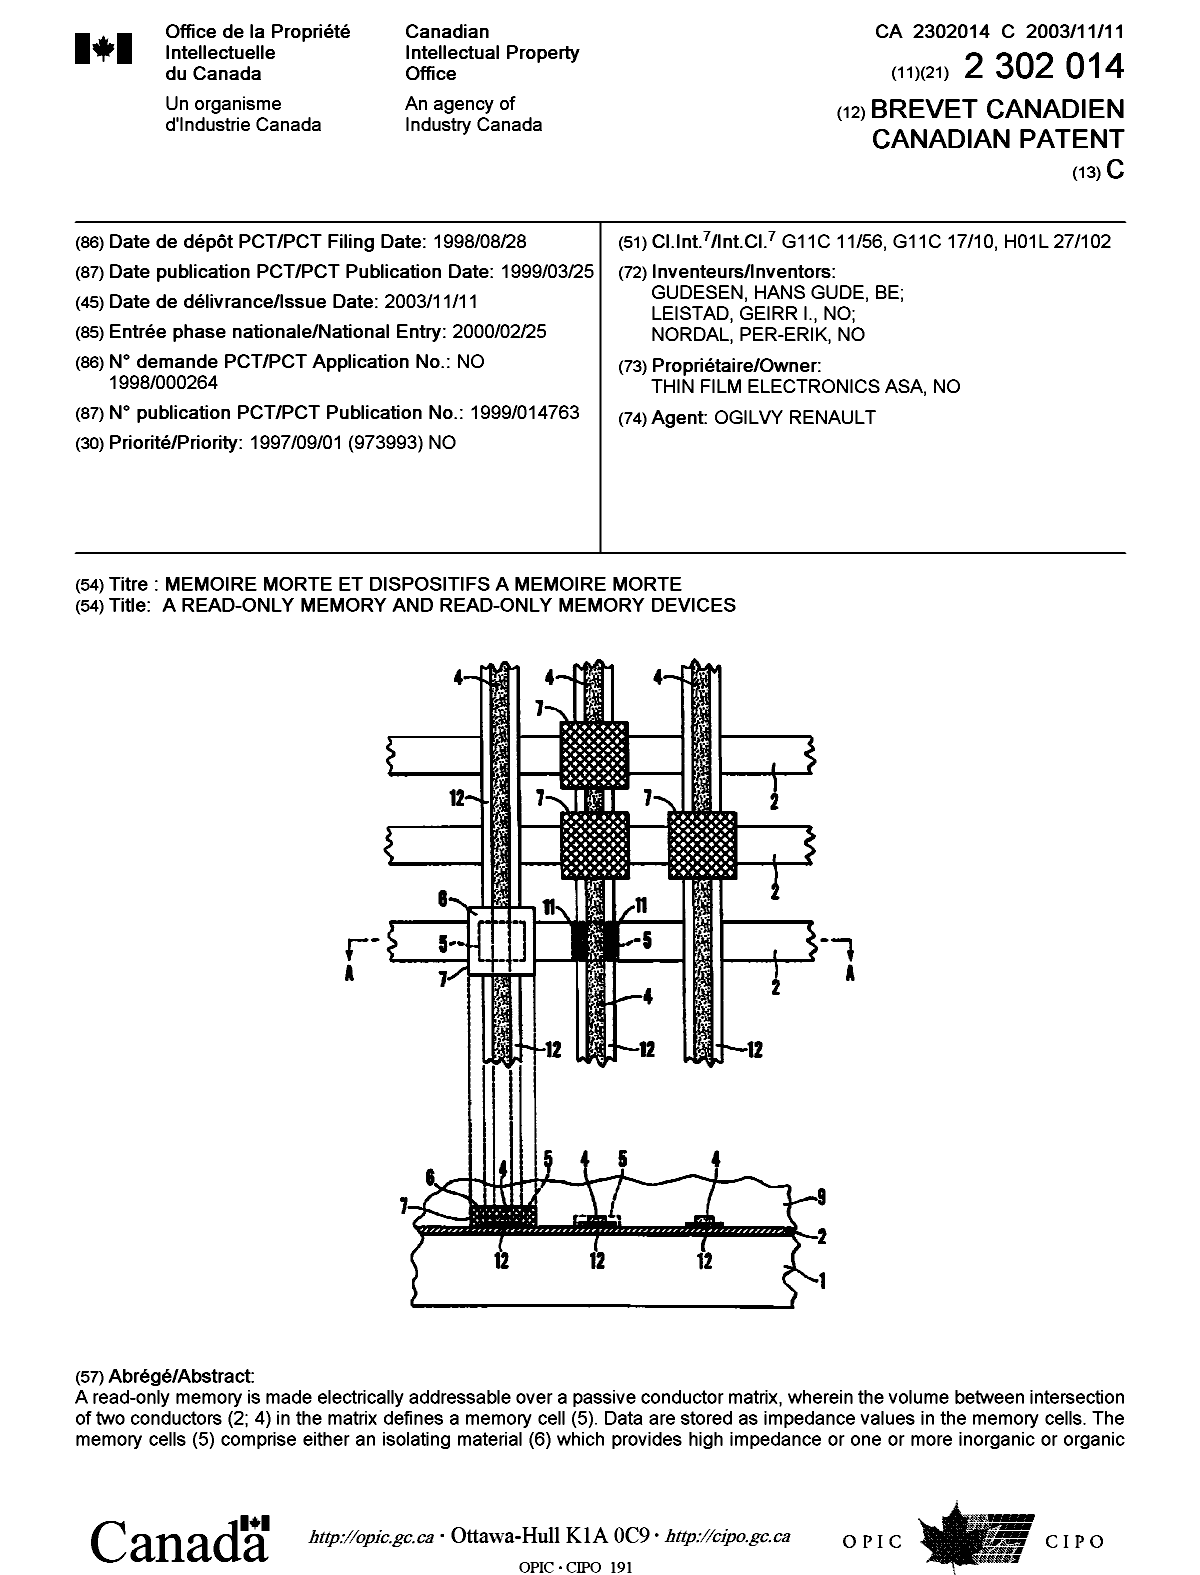 Document de brevet canadien 2302014. Page couverture 20031008. Image 1 de 2